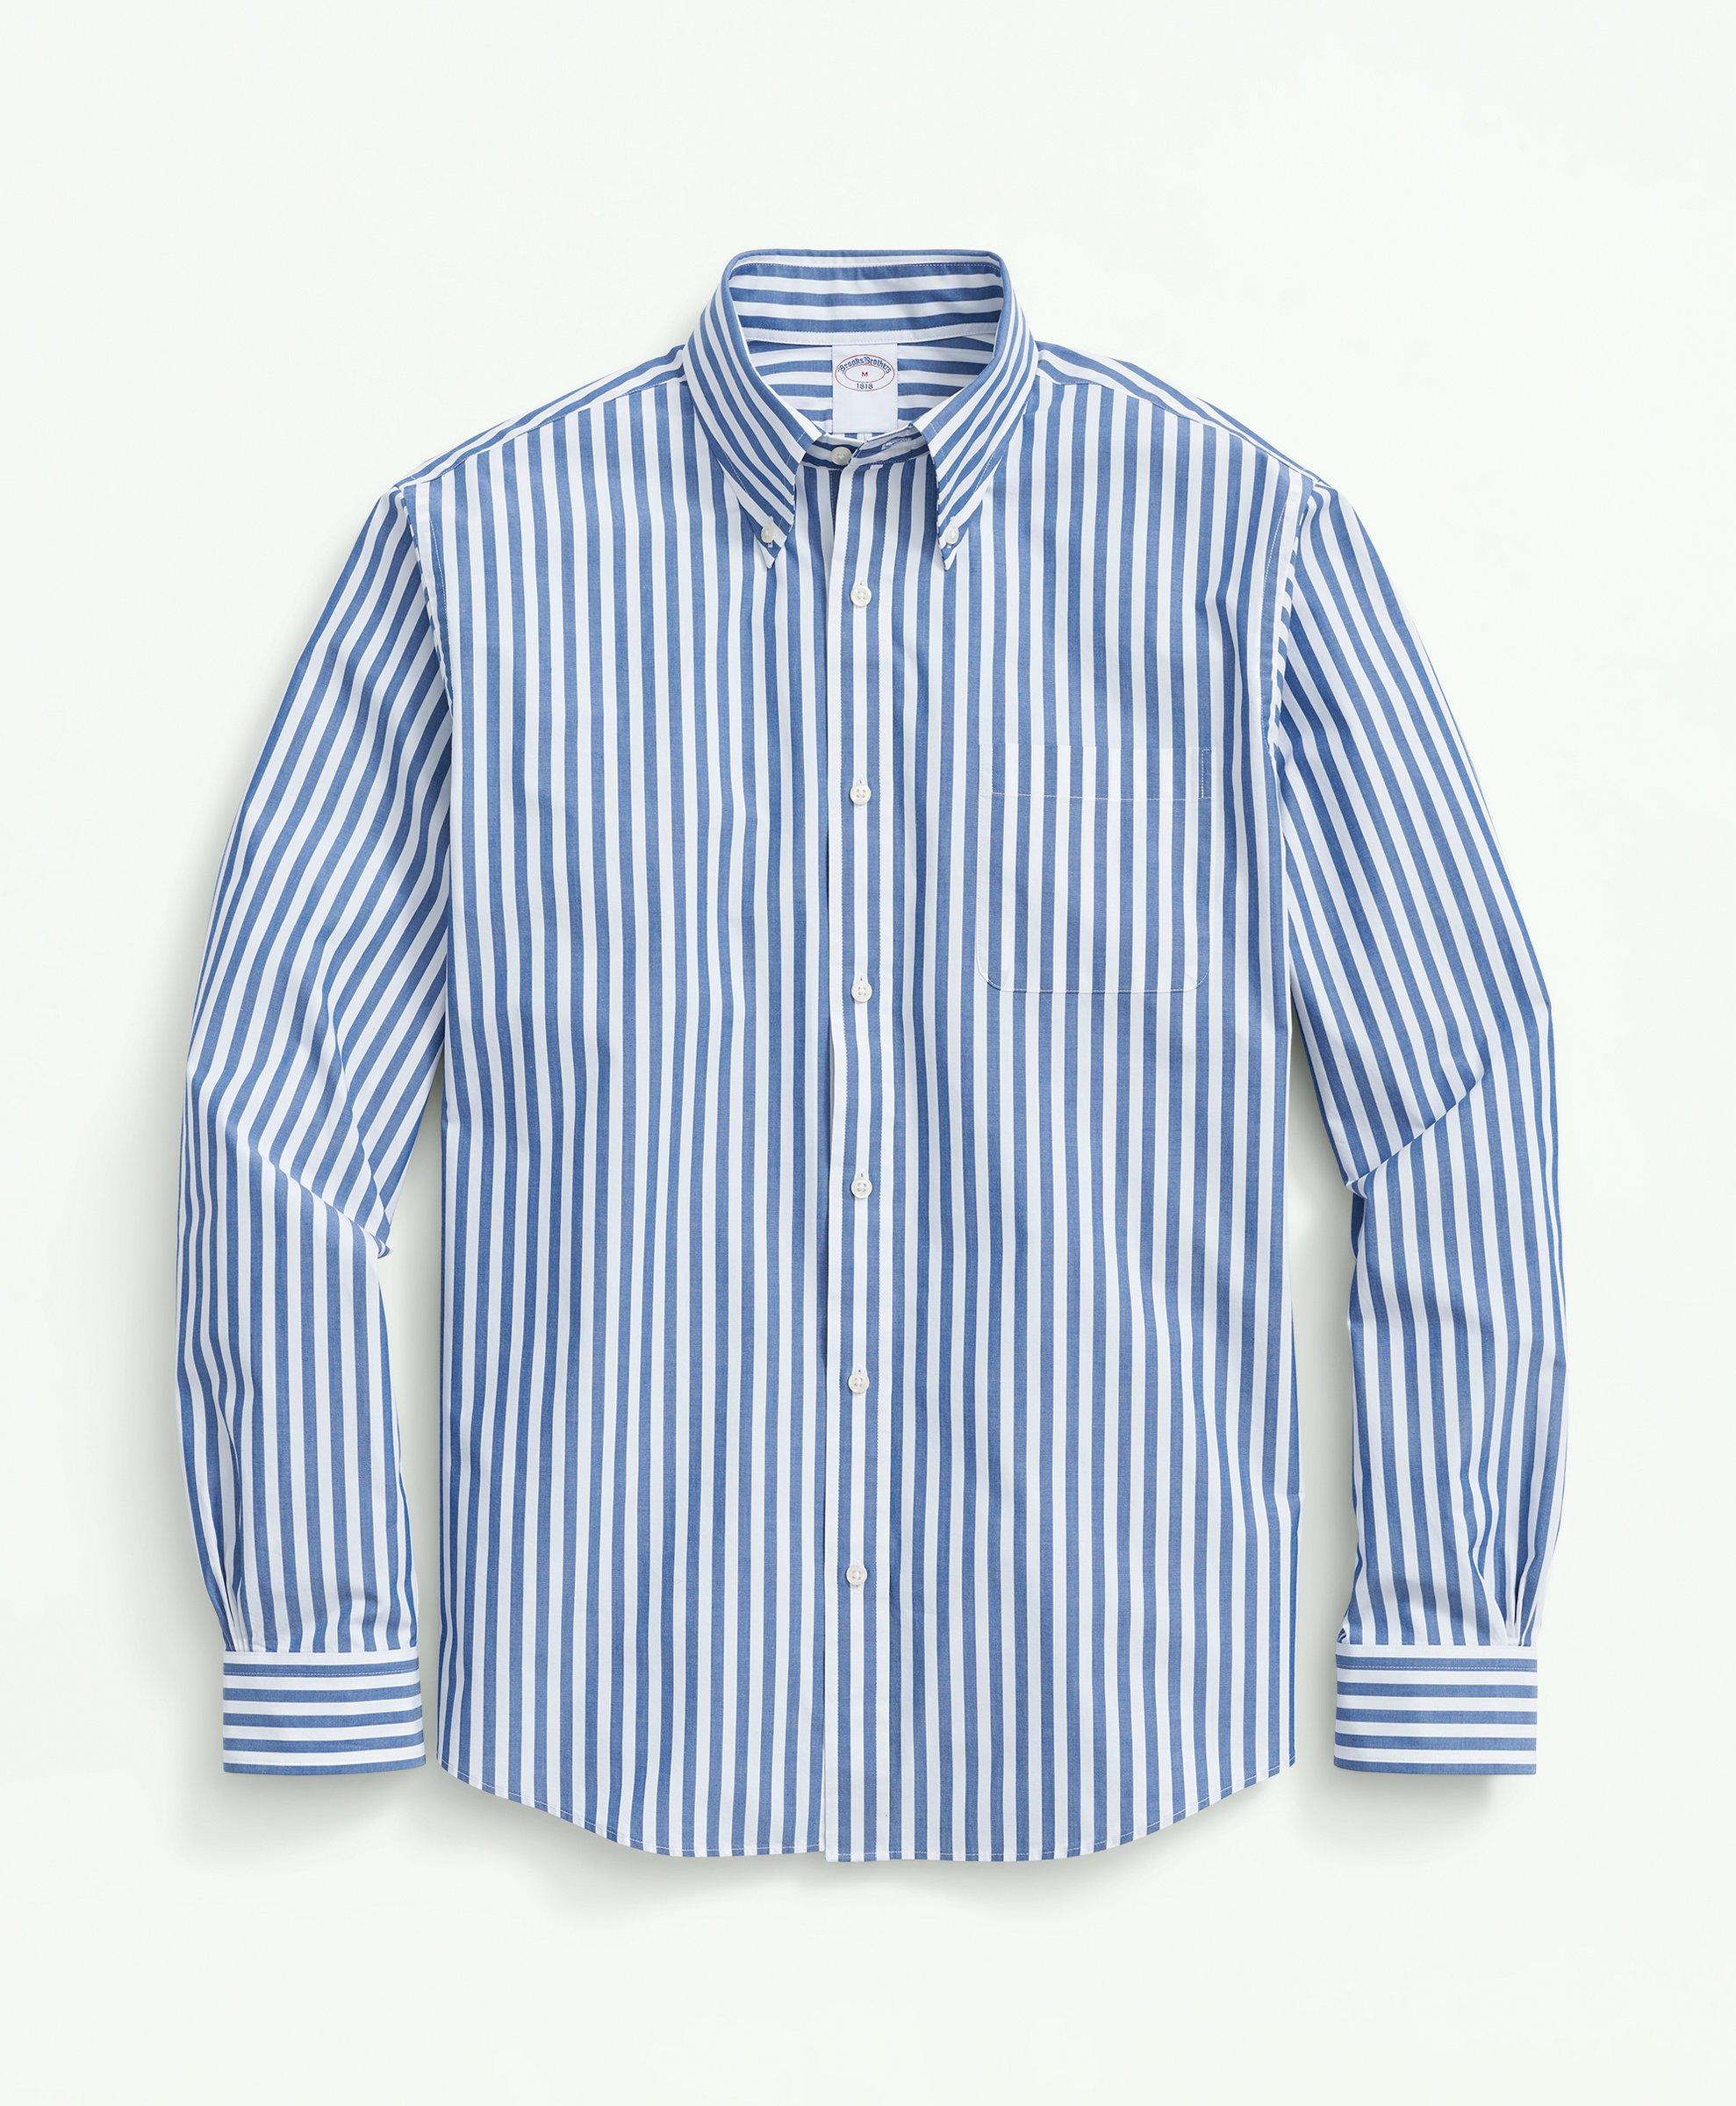 Brooks Brothers Big & Tall Friday Shirt, Poplin Butcher Striped | Blue | Size 4x Tall